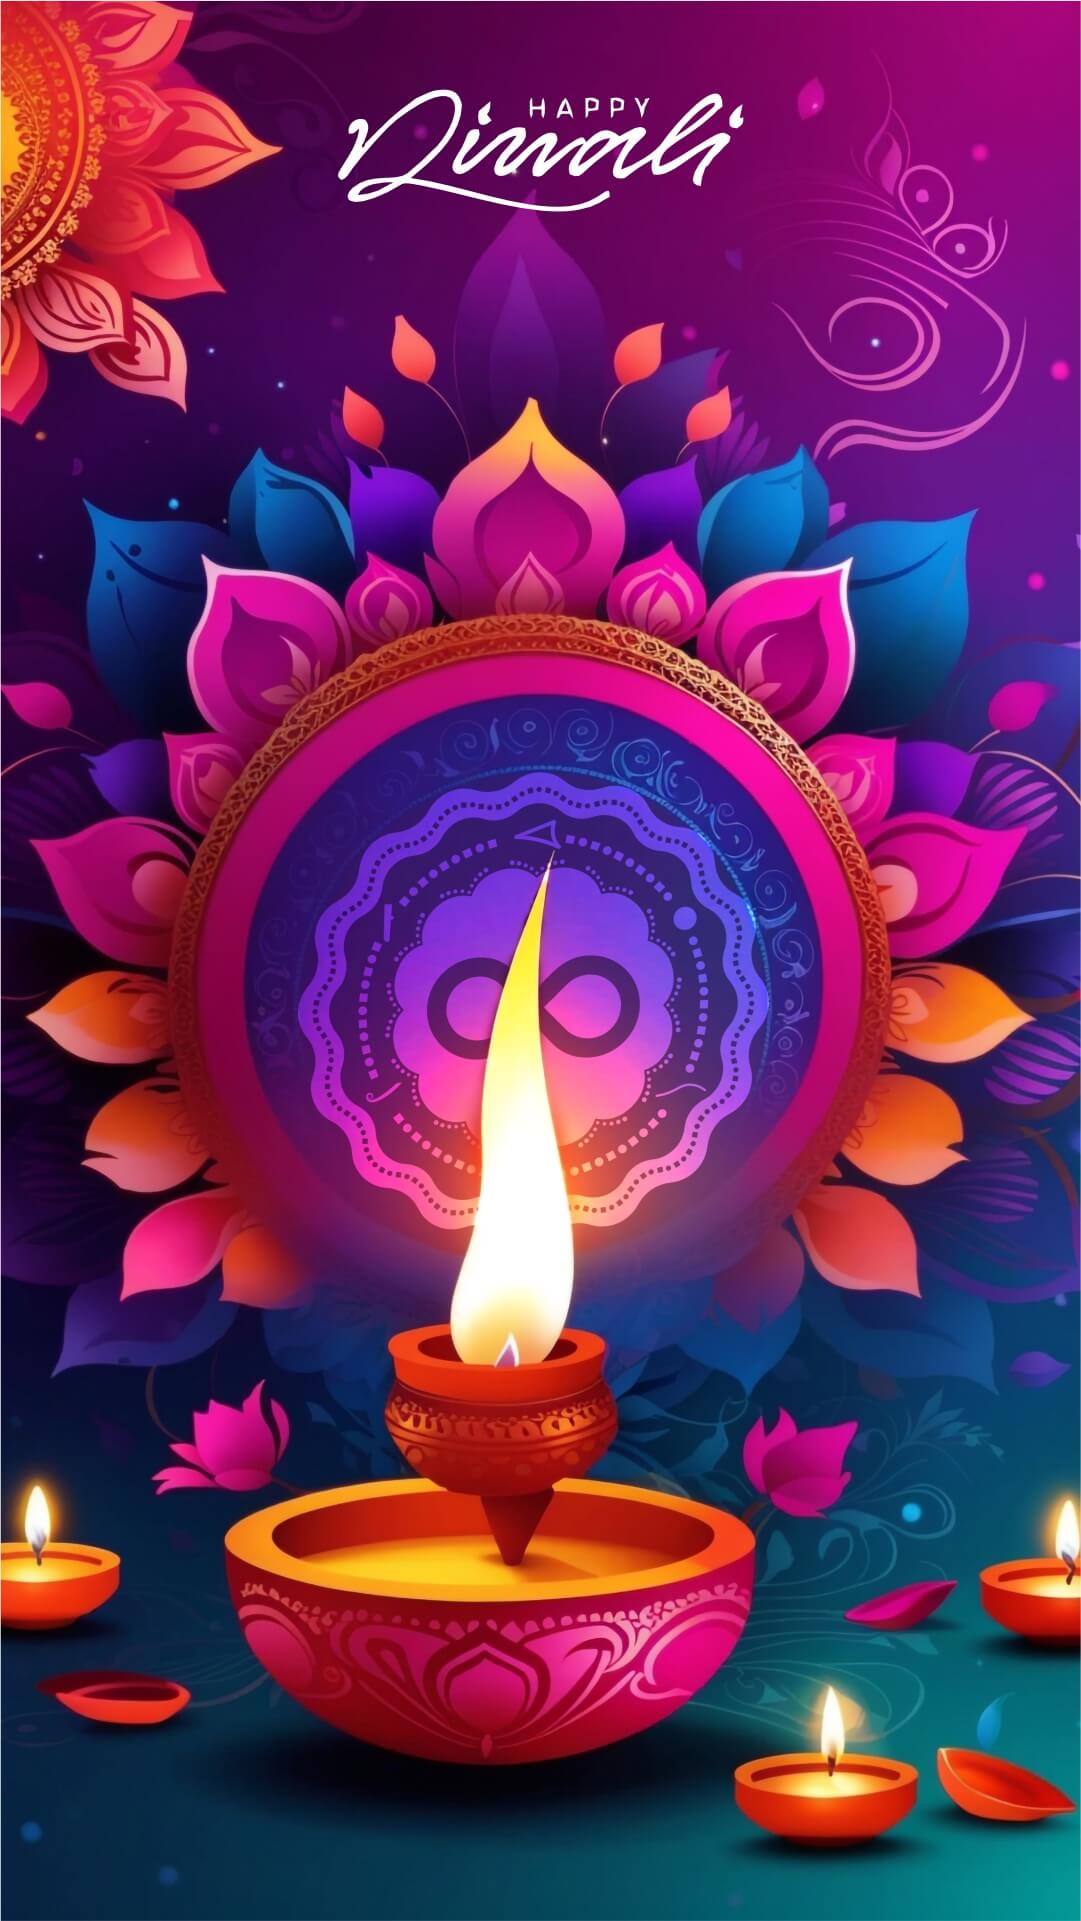 Happy Diwali Story For Instagram